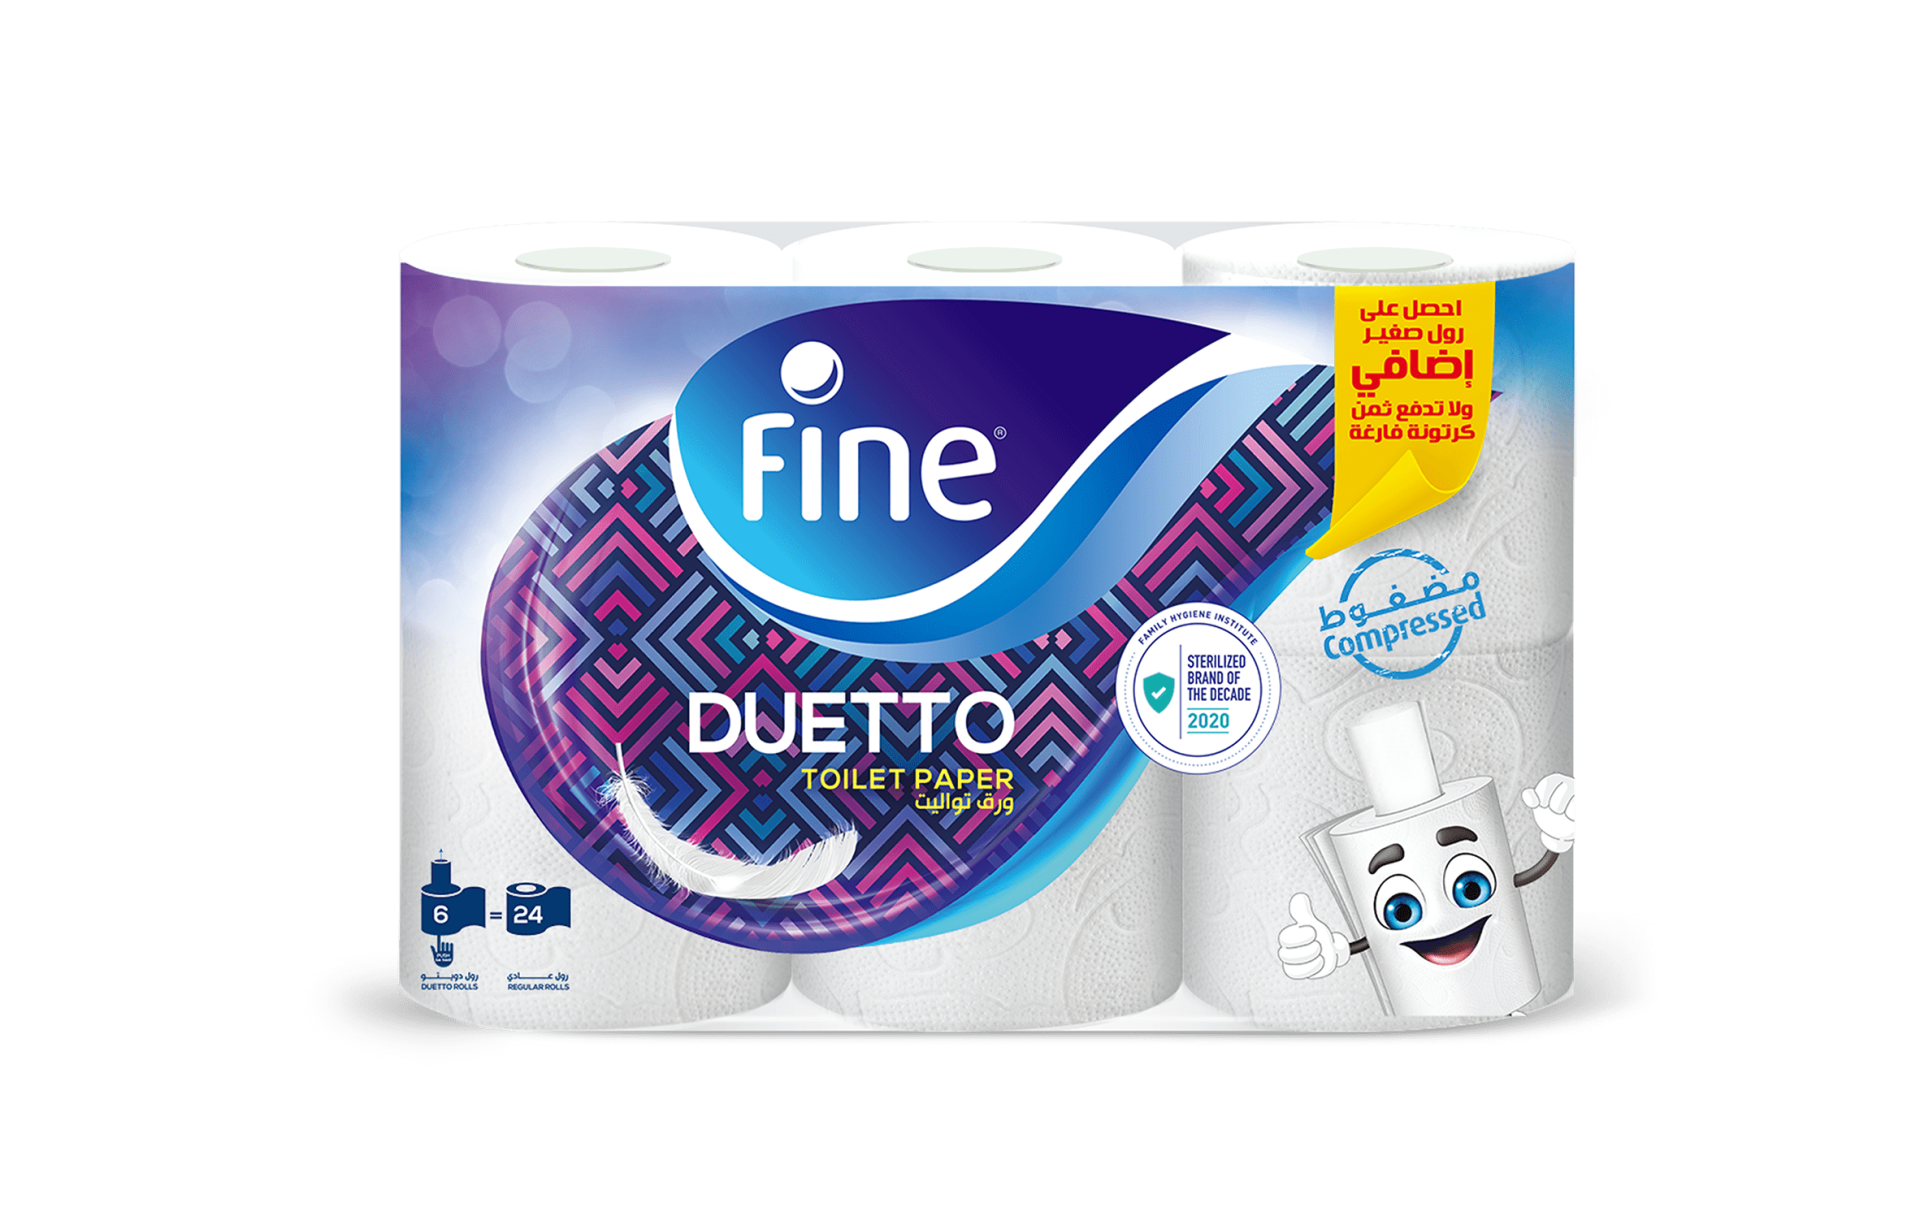 Fine Duetto Toilet Paper Image